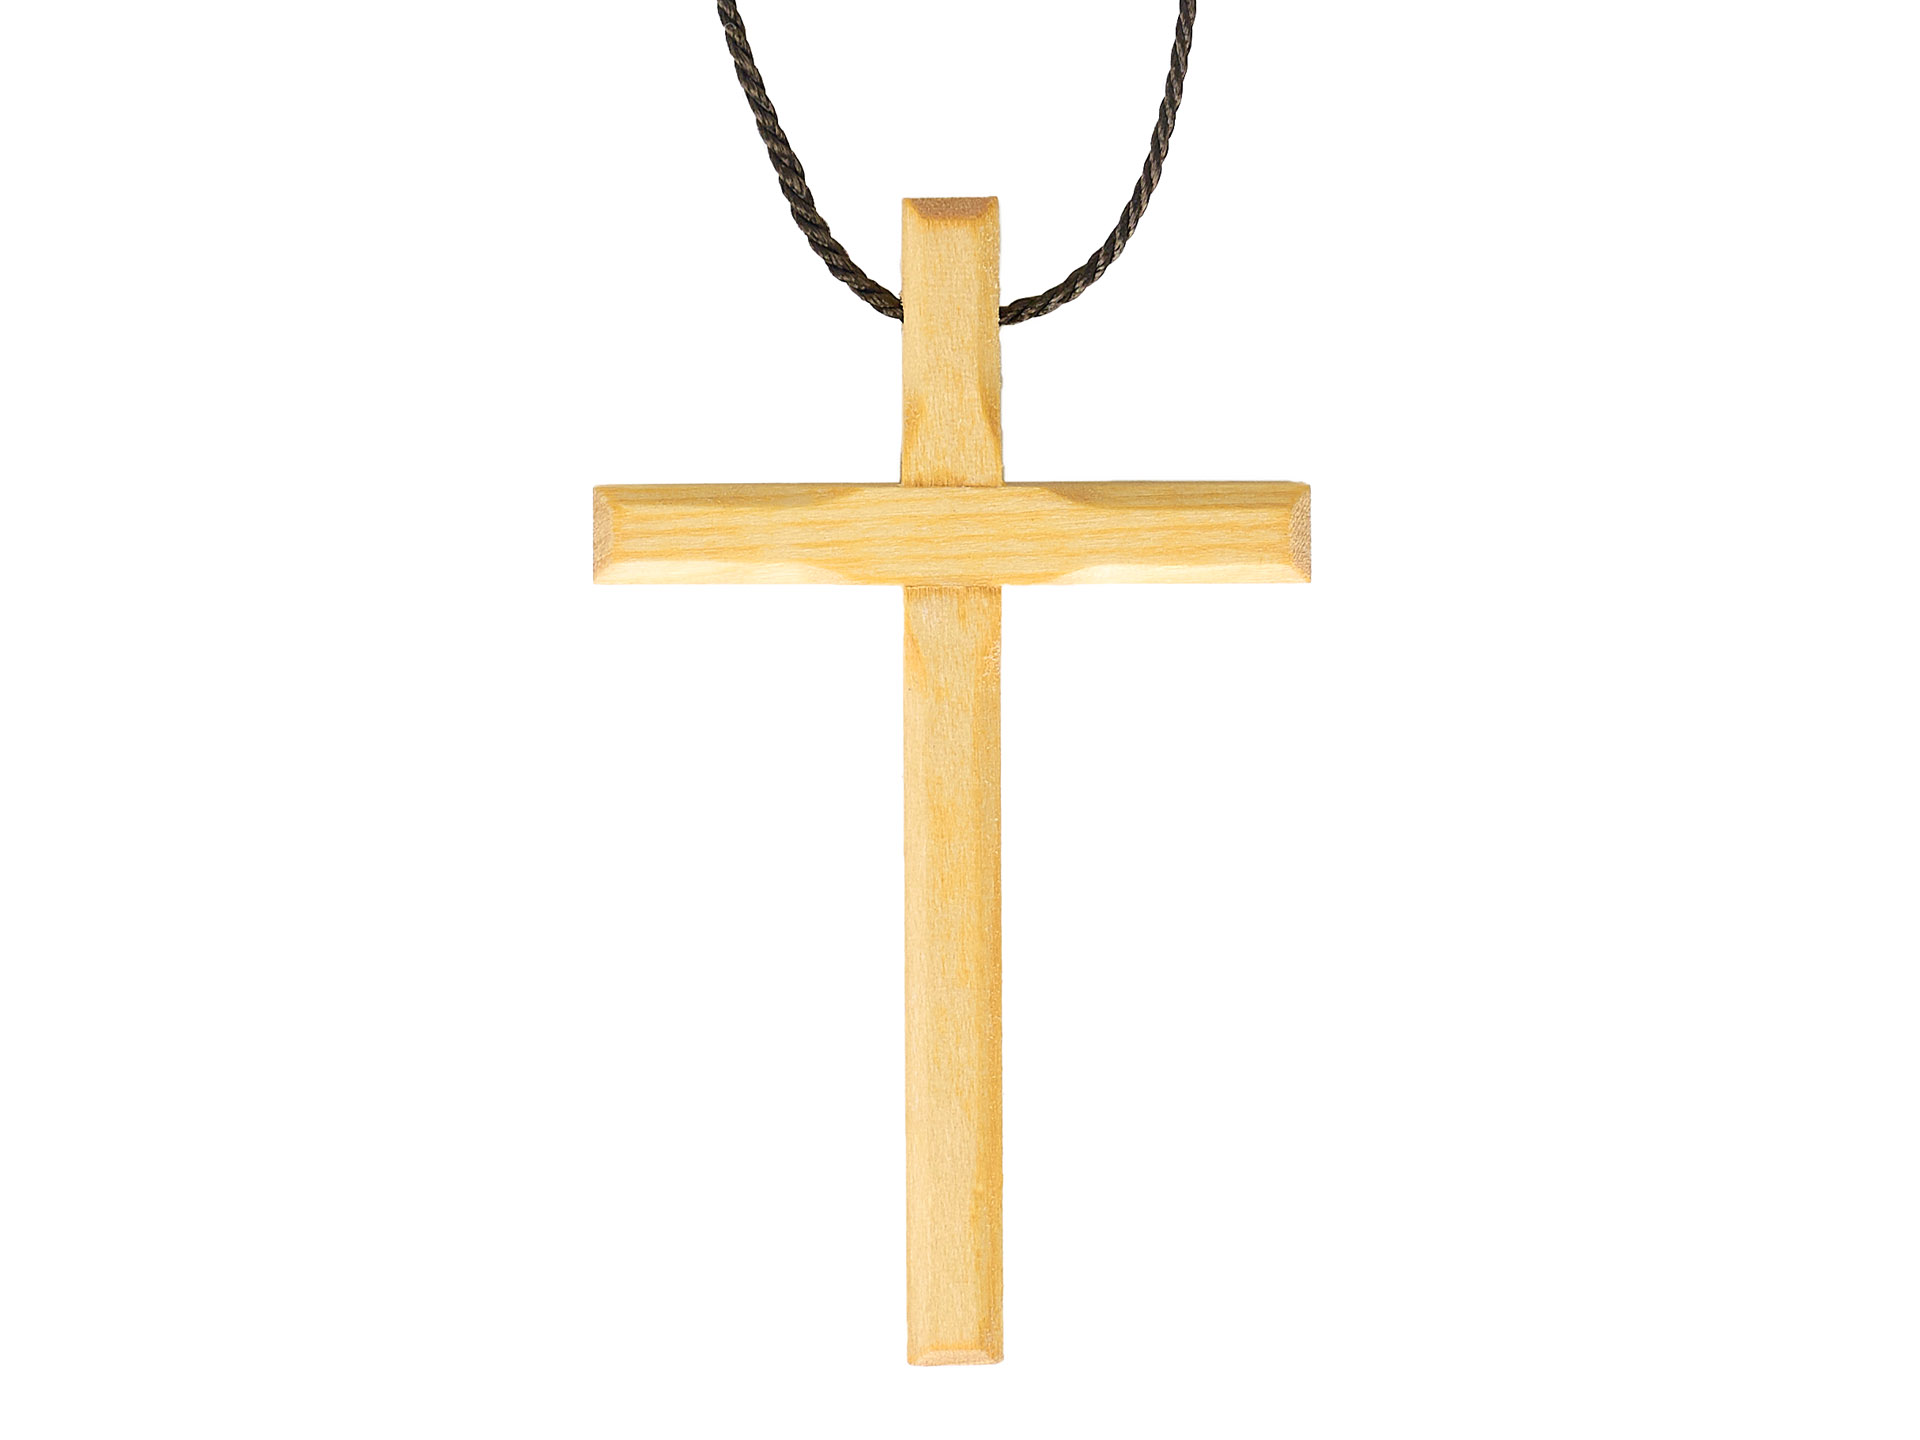 Kaufen Sie Goldene Zweig-Kreuz-Kette-Halskette. Echter Olivenzweig Kreuz  Gold zu Großhandelspreisen